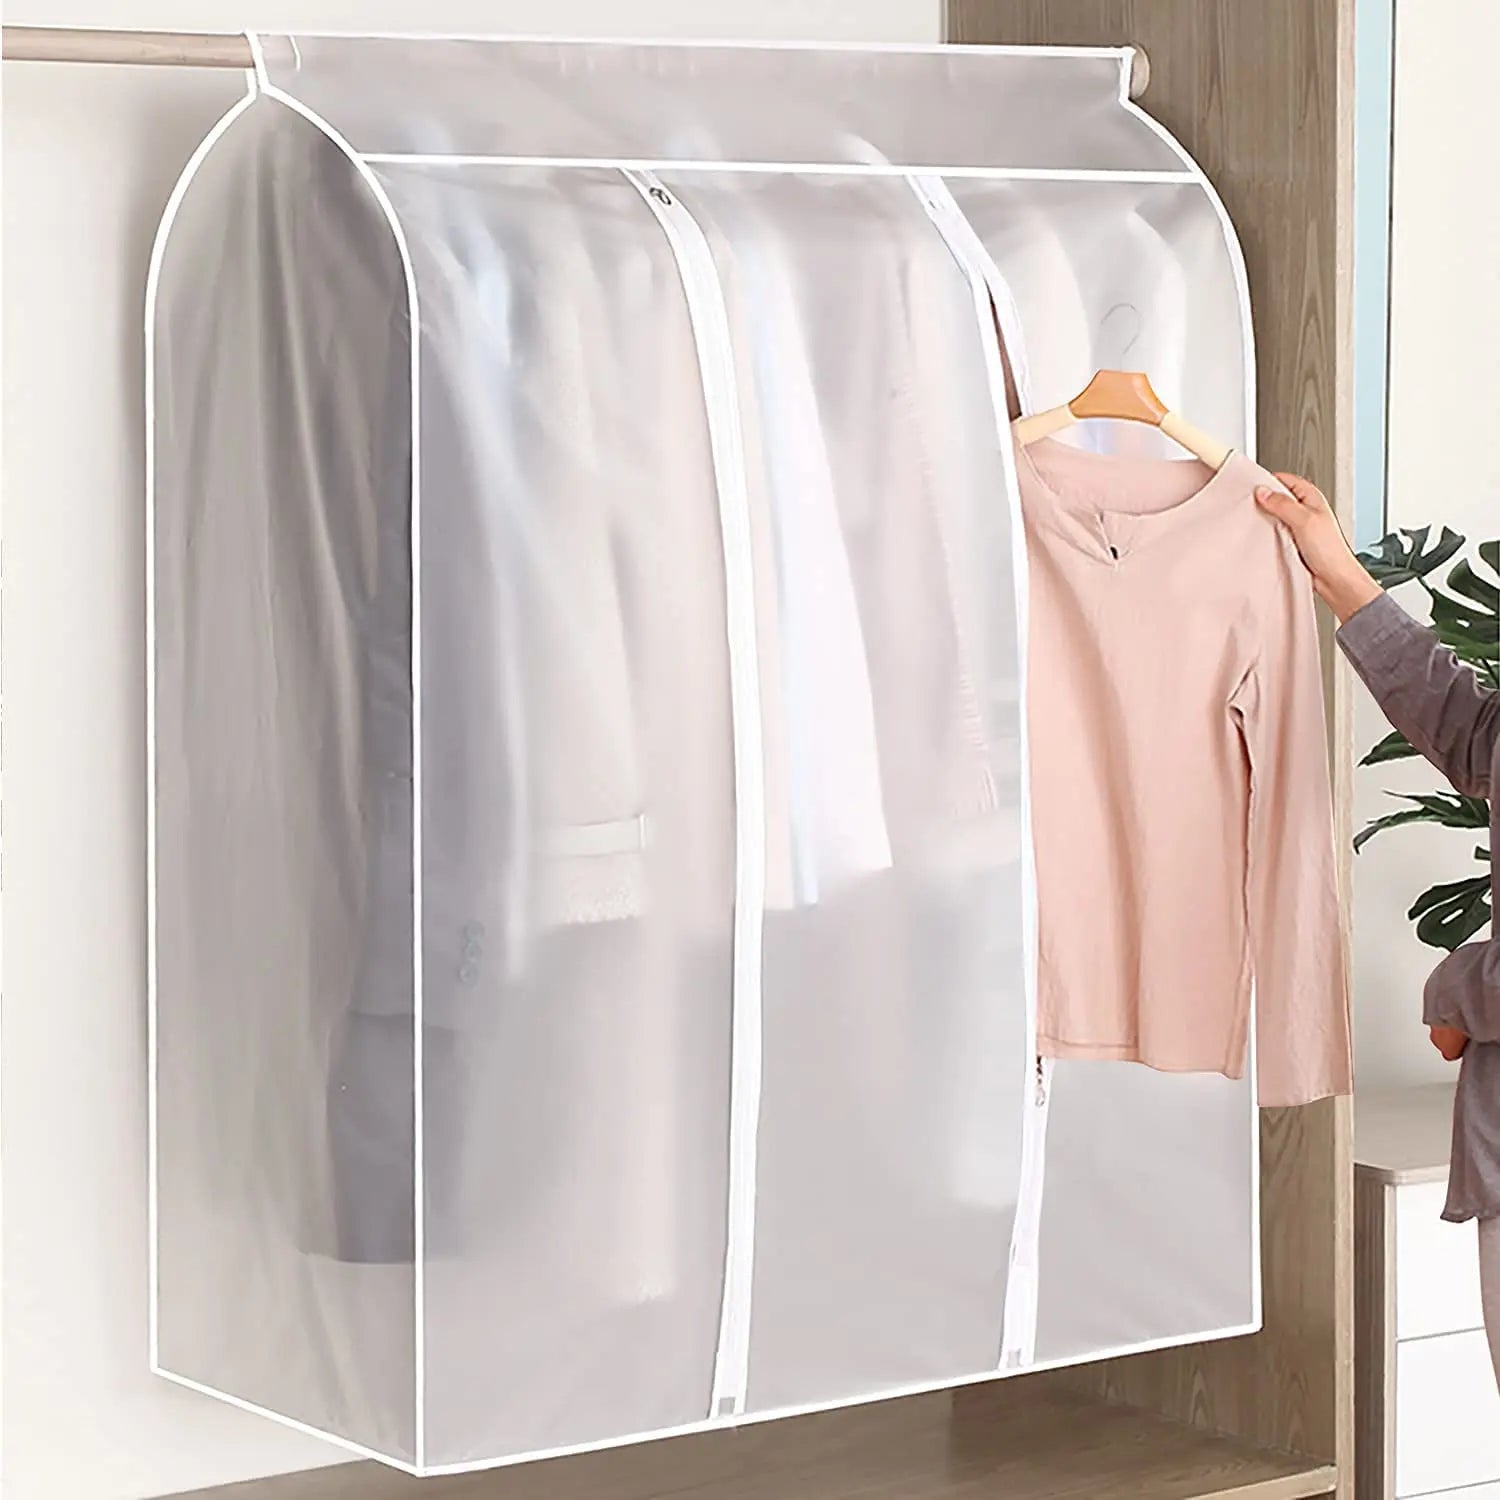 3D Zipper Clothes Dust Cover Clothes Storage Wardrobe Suit Case D